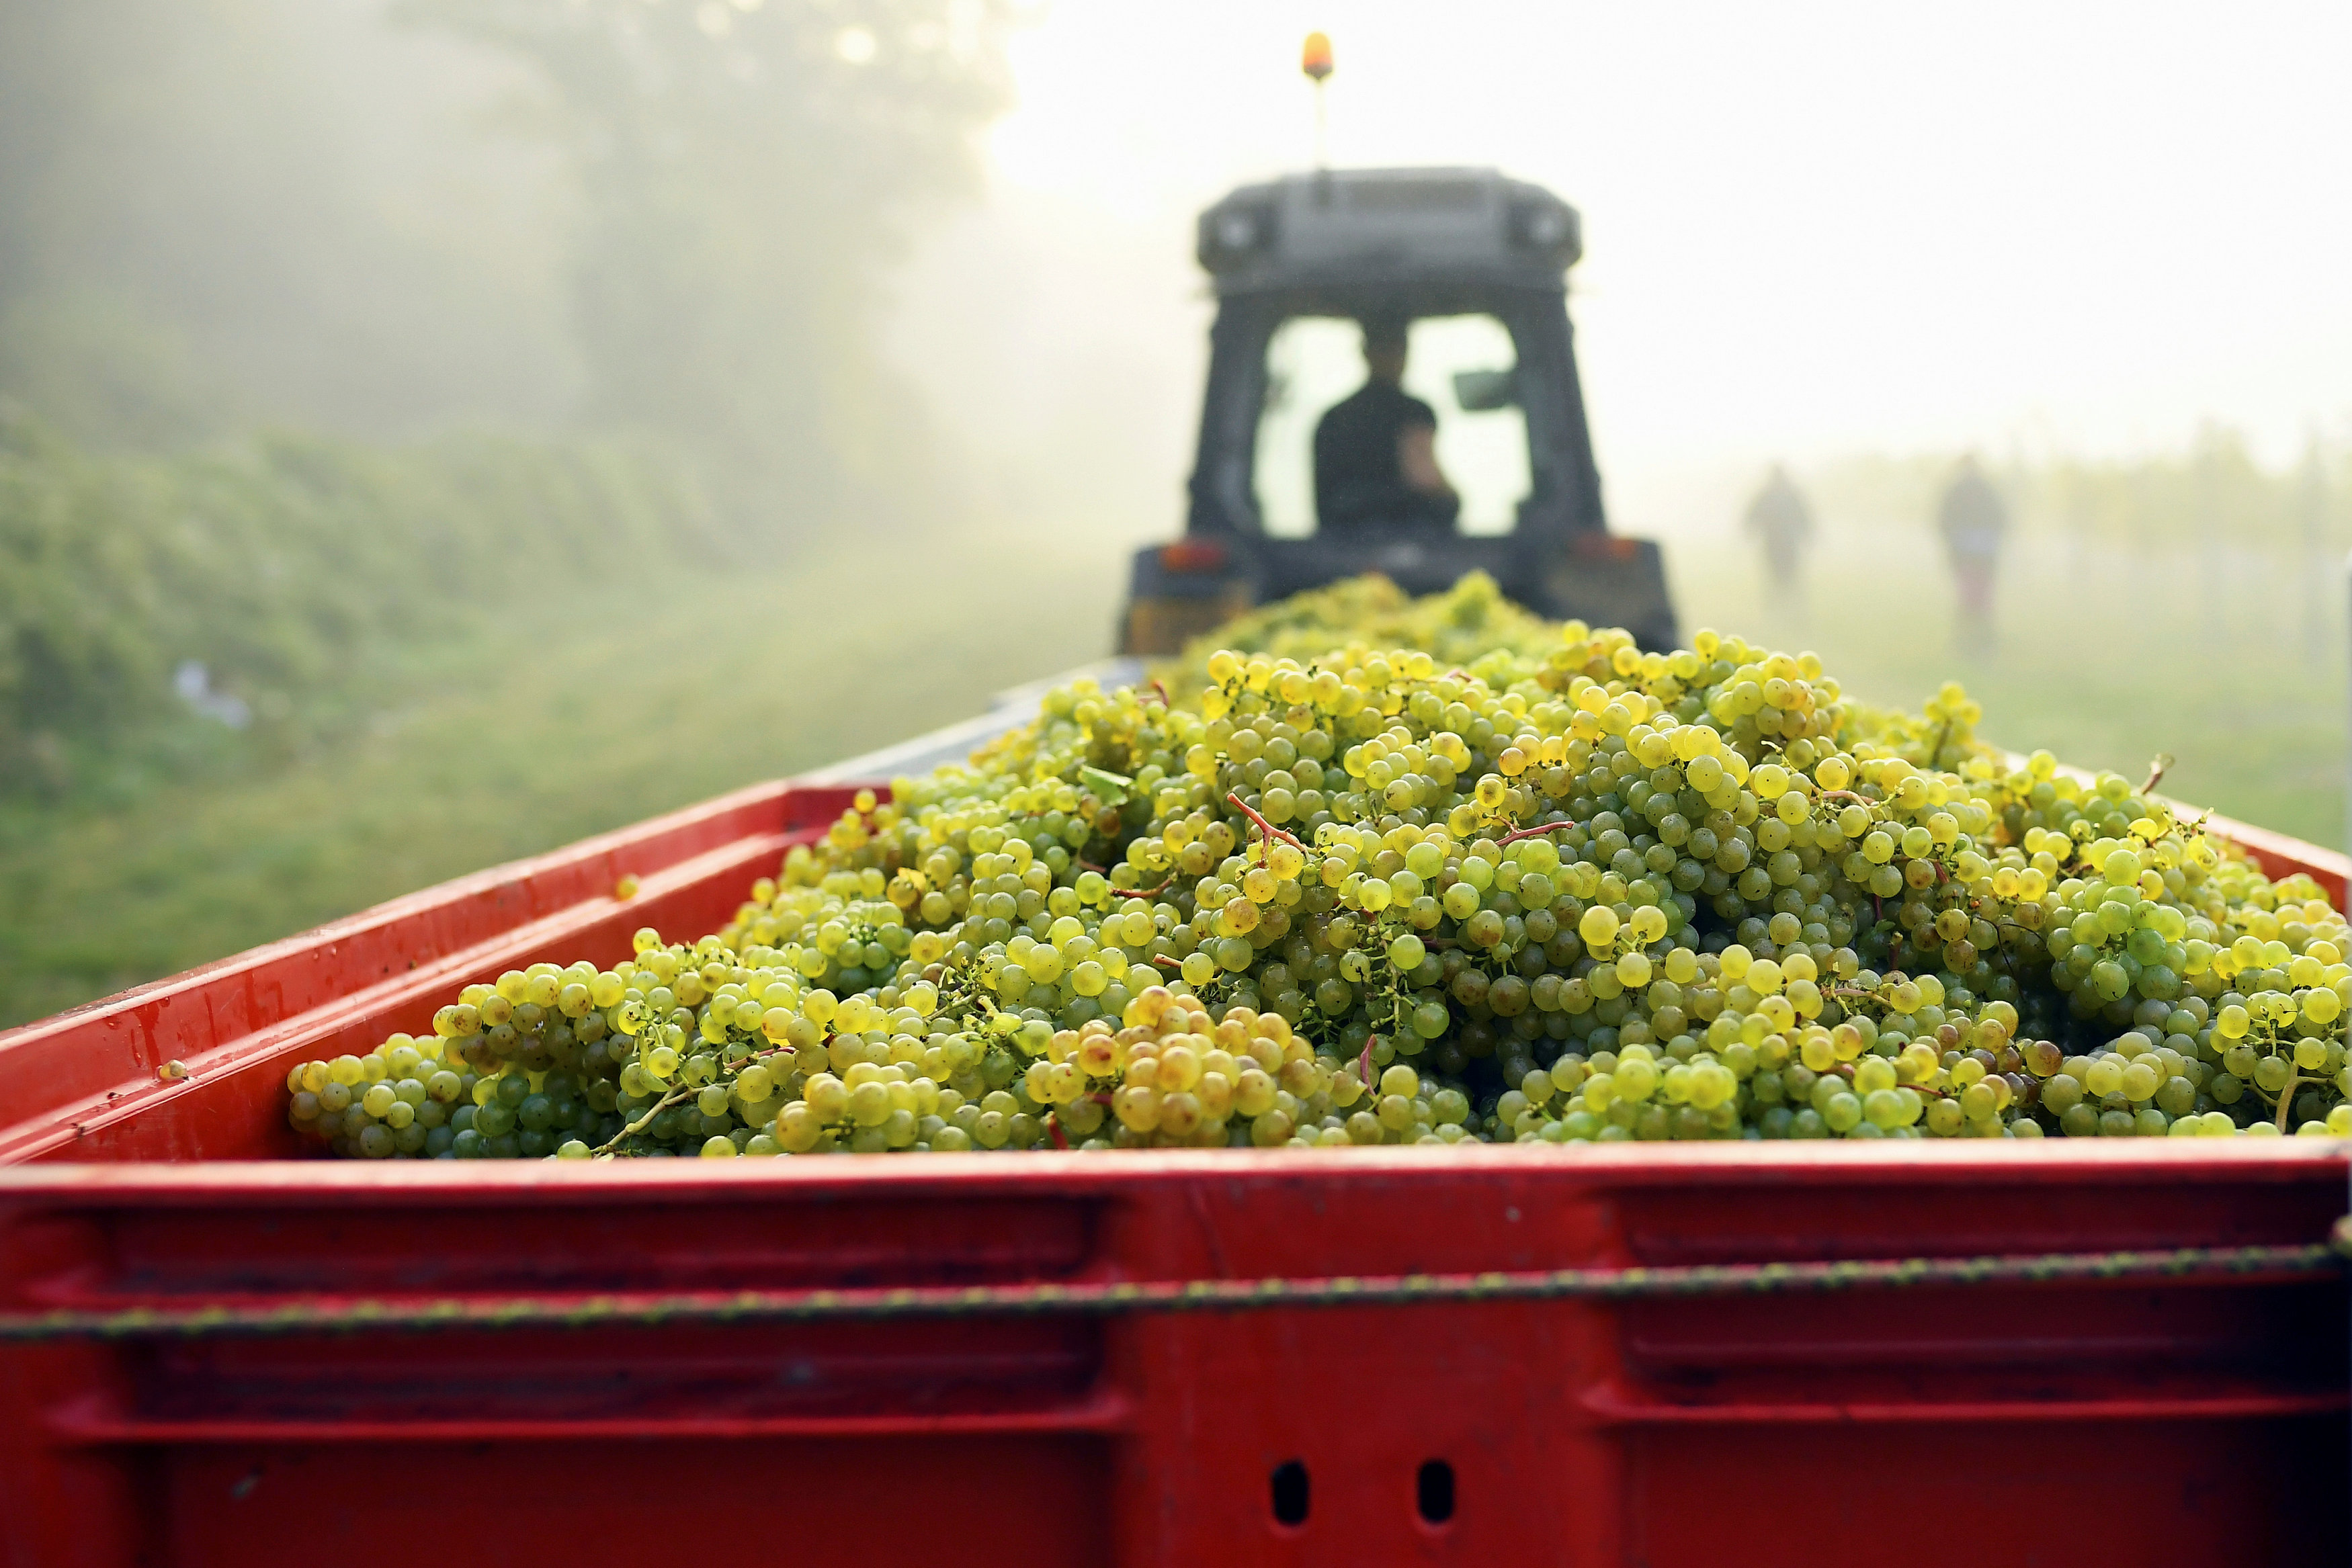 العنب بعد الحصاد يتم نقله عبر سيارة إلى مصانع النبيذ